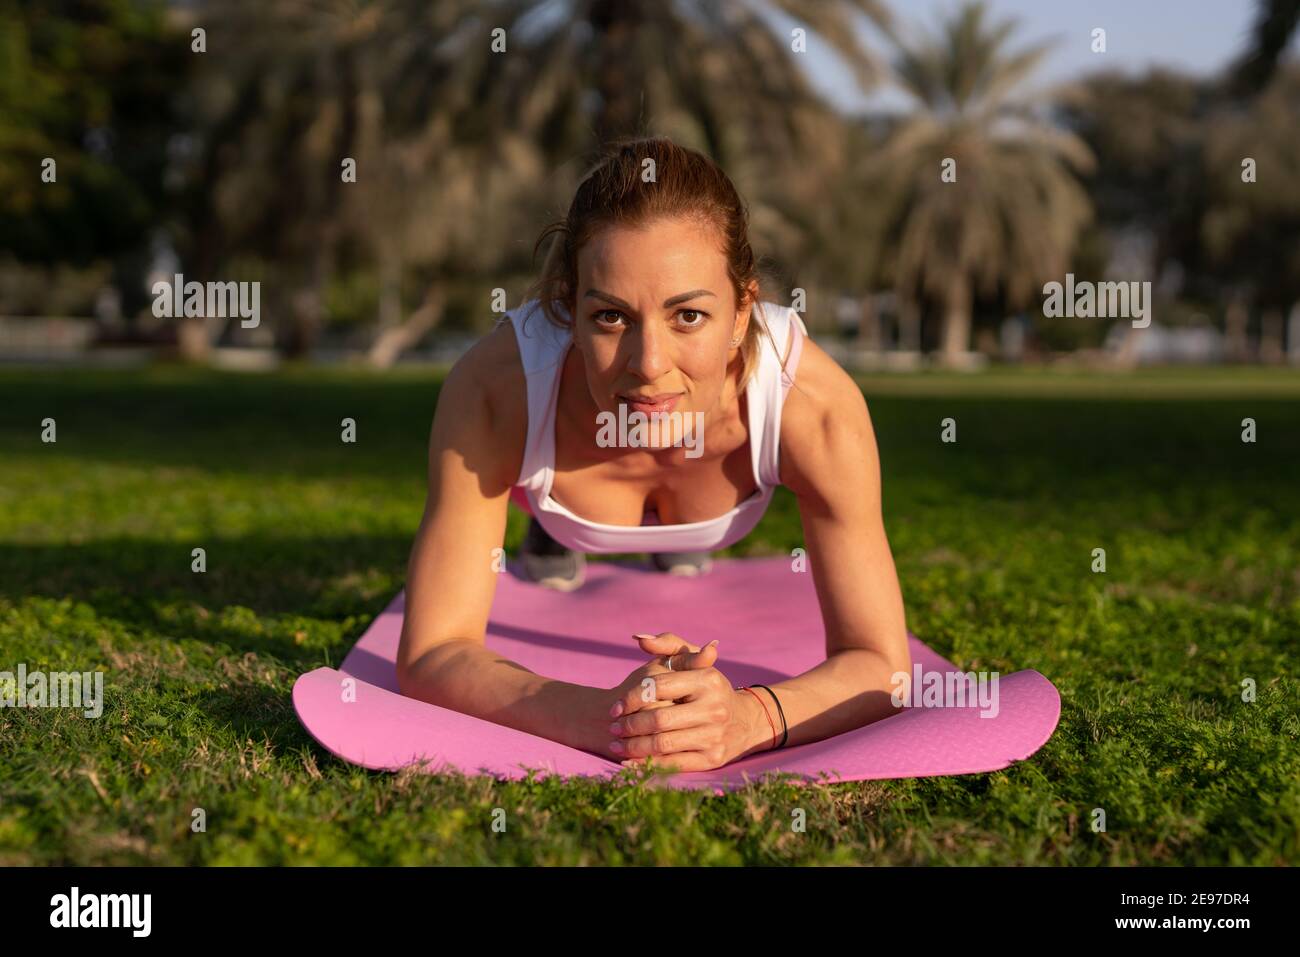 Im ruhigen Ambiente der Natur widmet sich eine junge Dame der Kunst des Yoga, die in leuchtend rosa Yoga-Kleidung verziert ist. Stockfoto